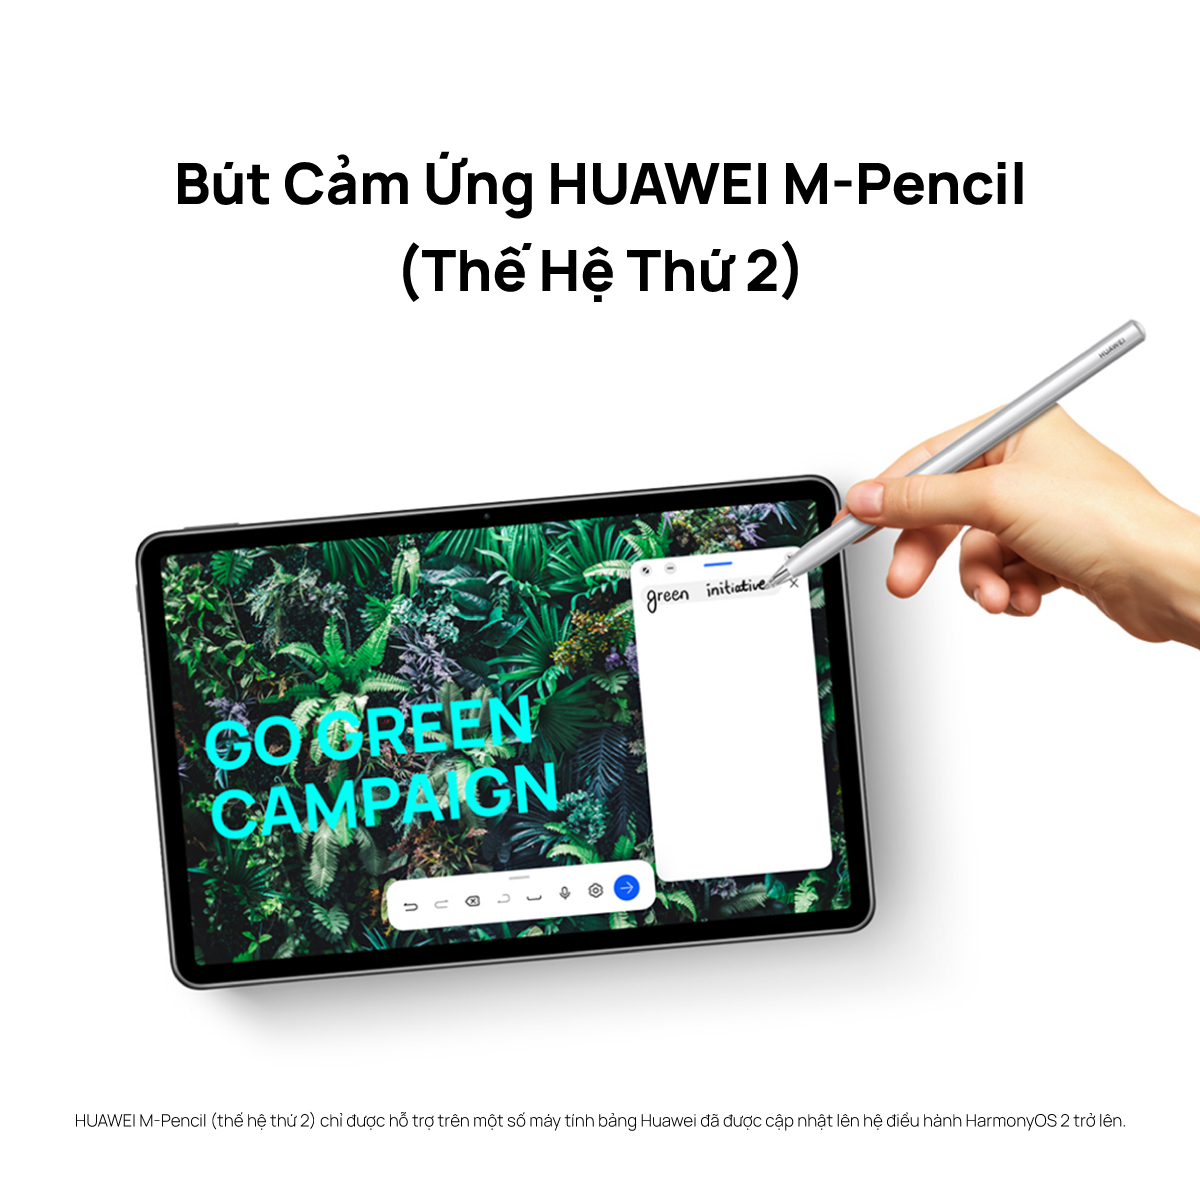 Máy Tính Bảng Huawei MatePad 11 | Màn Hình HUAWEI FullView 120 Hz | Hàng Chính Hãng